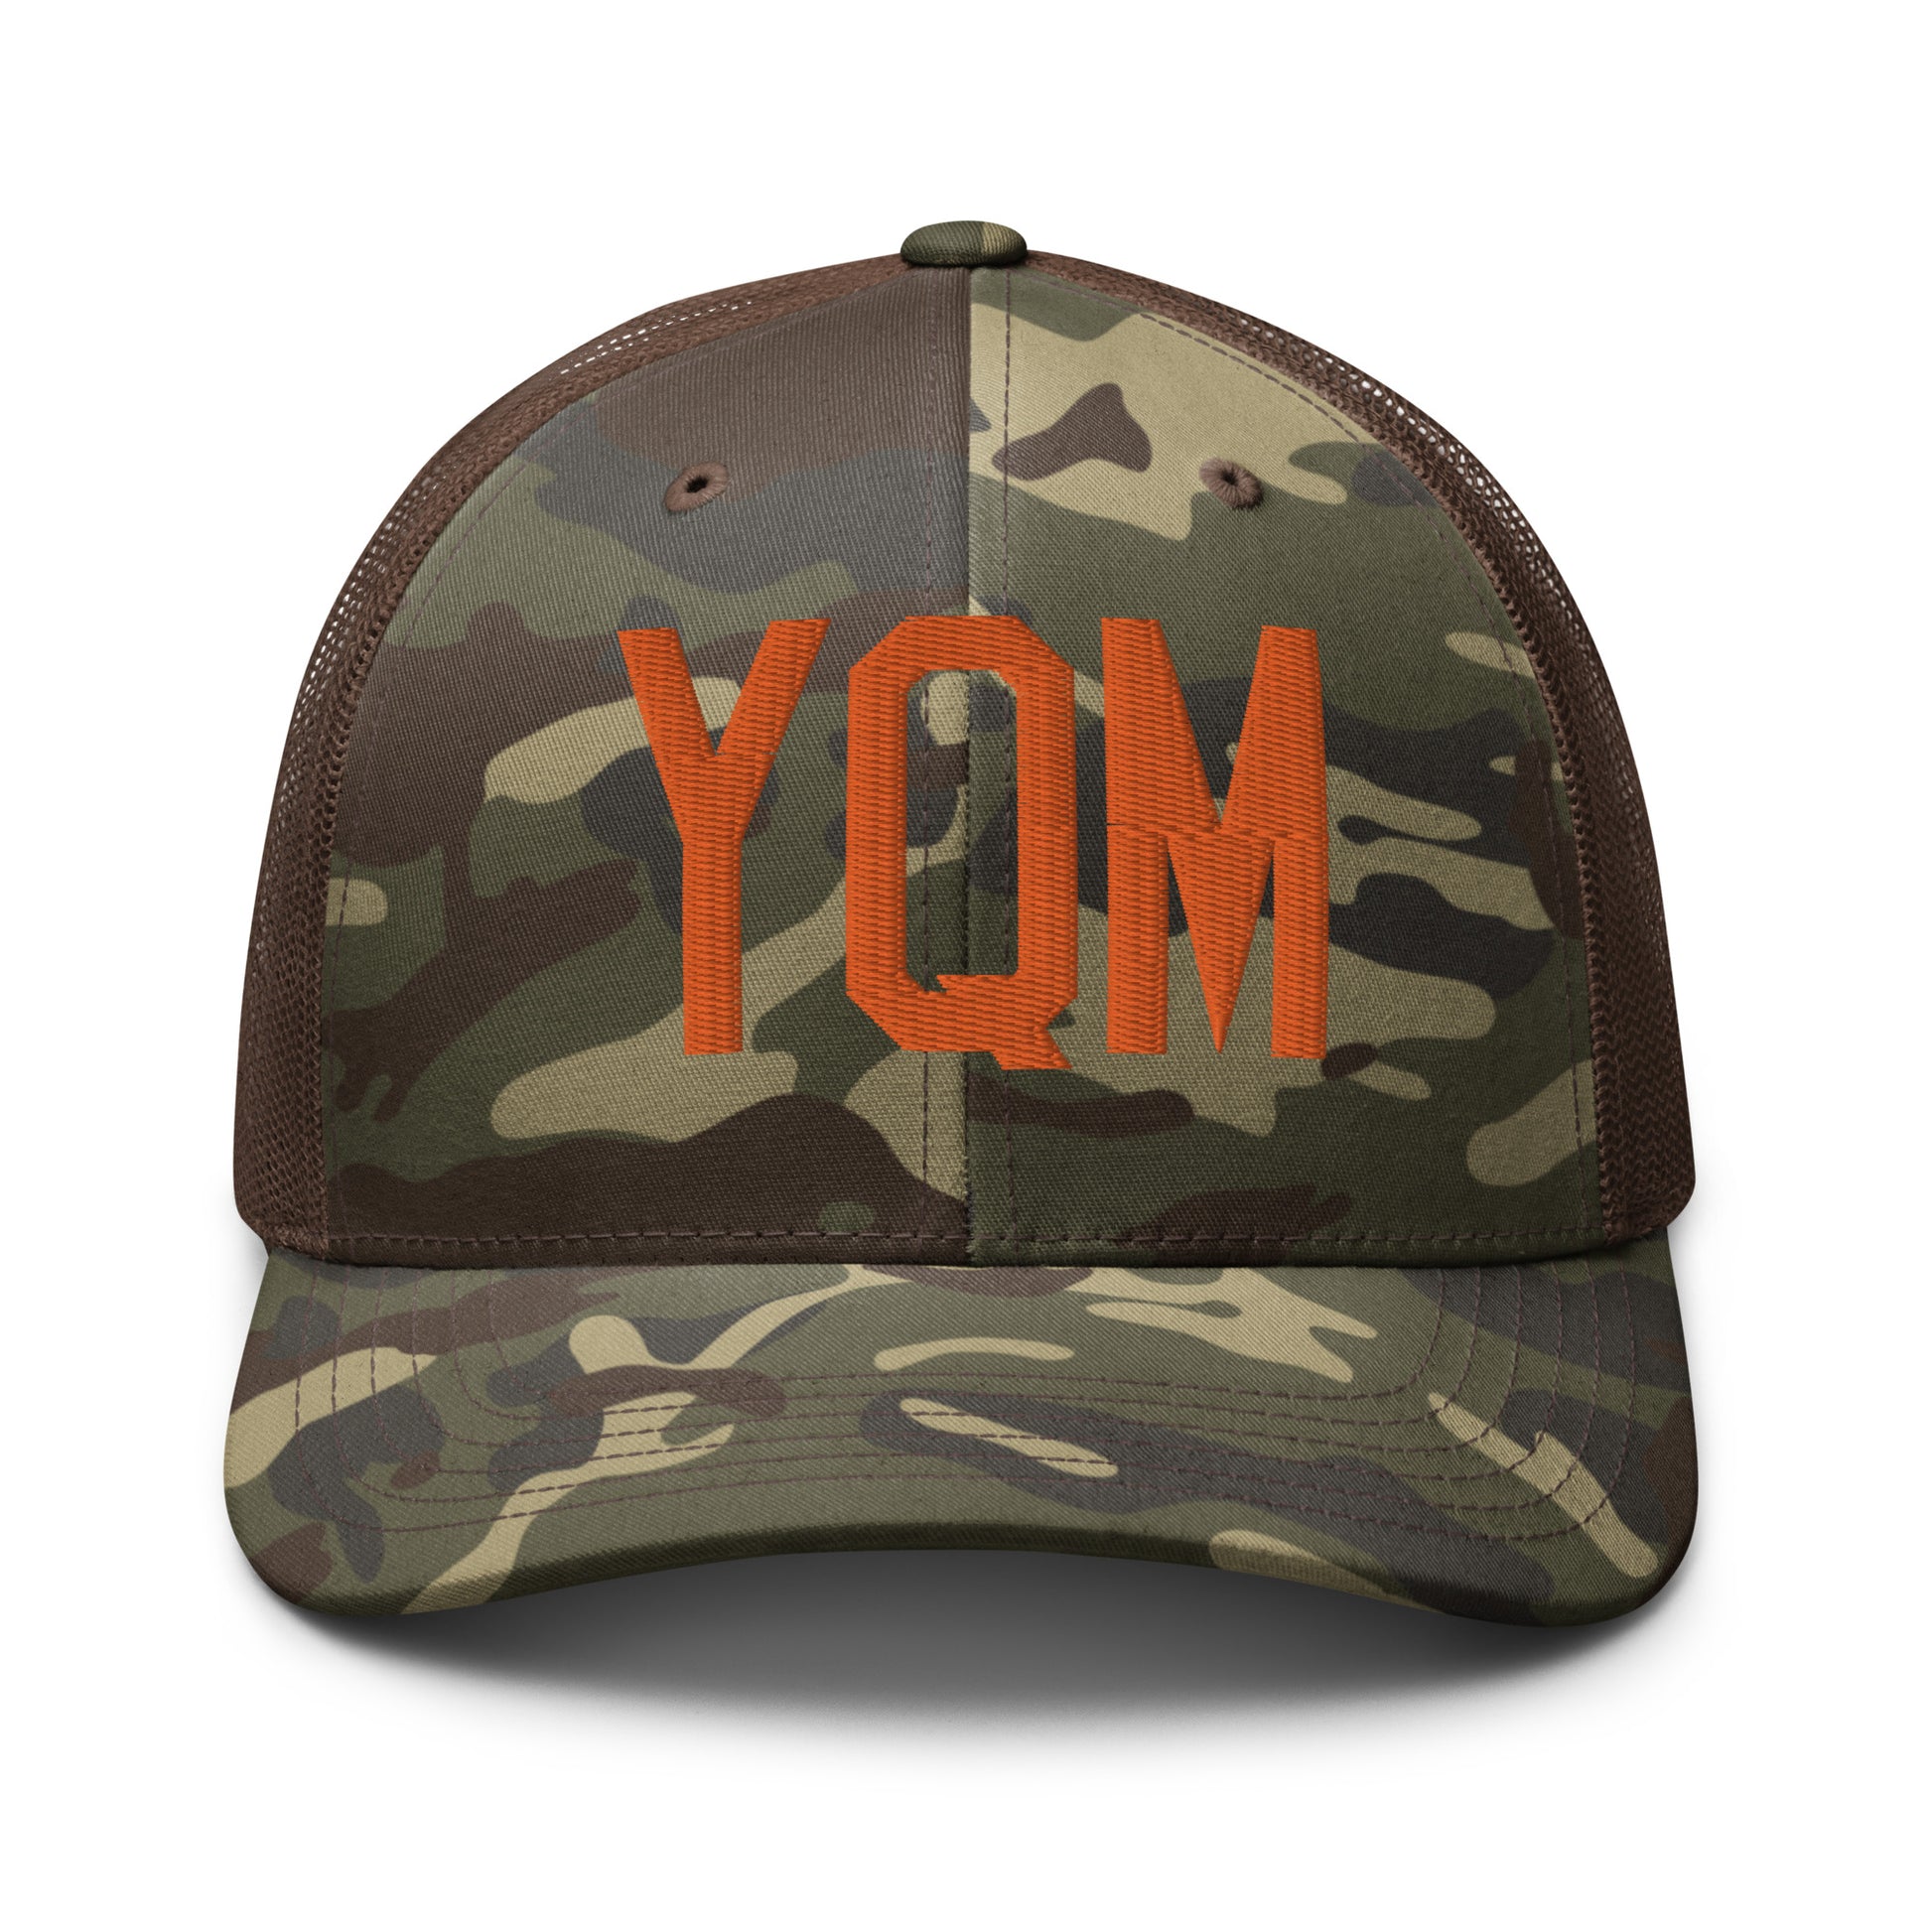 Airport Code Camouflage Trucker Hat - Orange • YQM Moncton • YHM Designs - Image 13